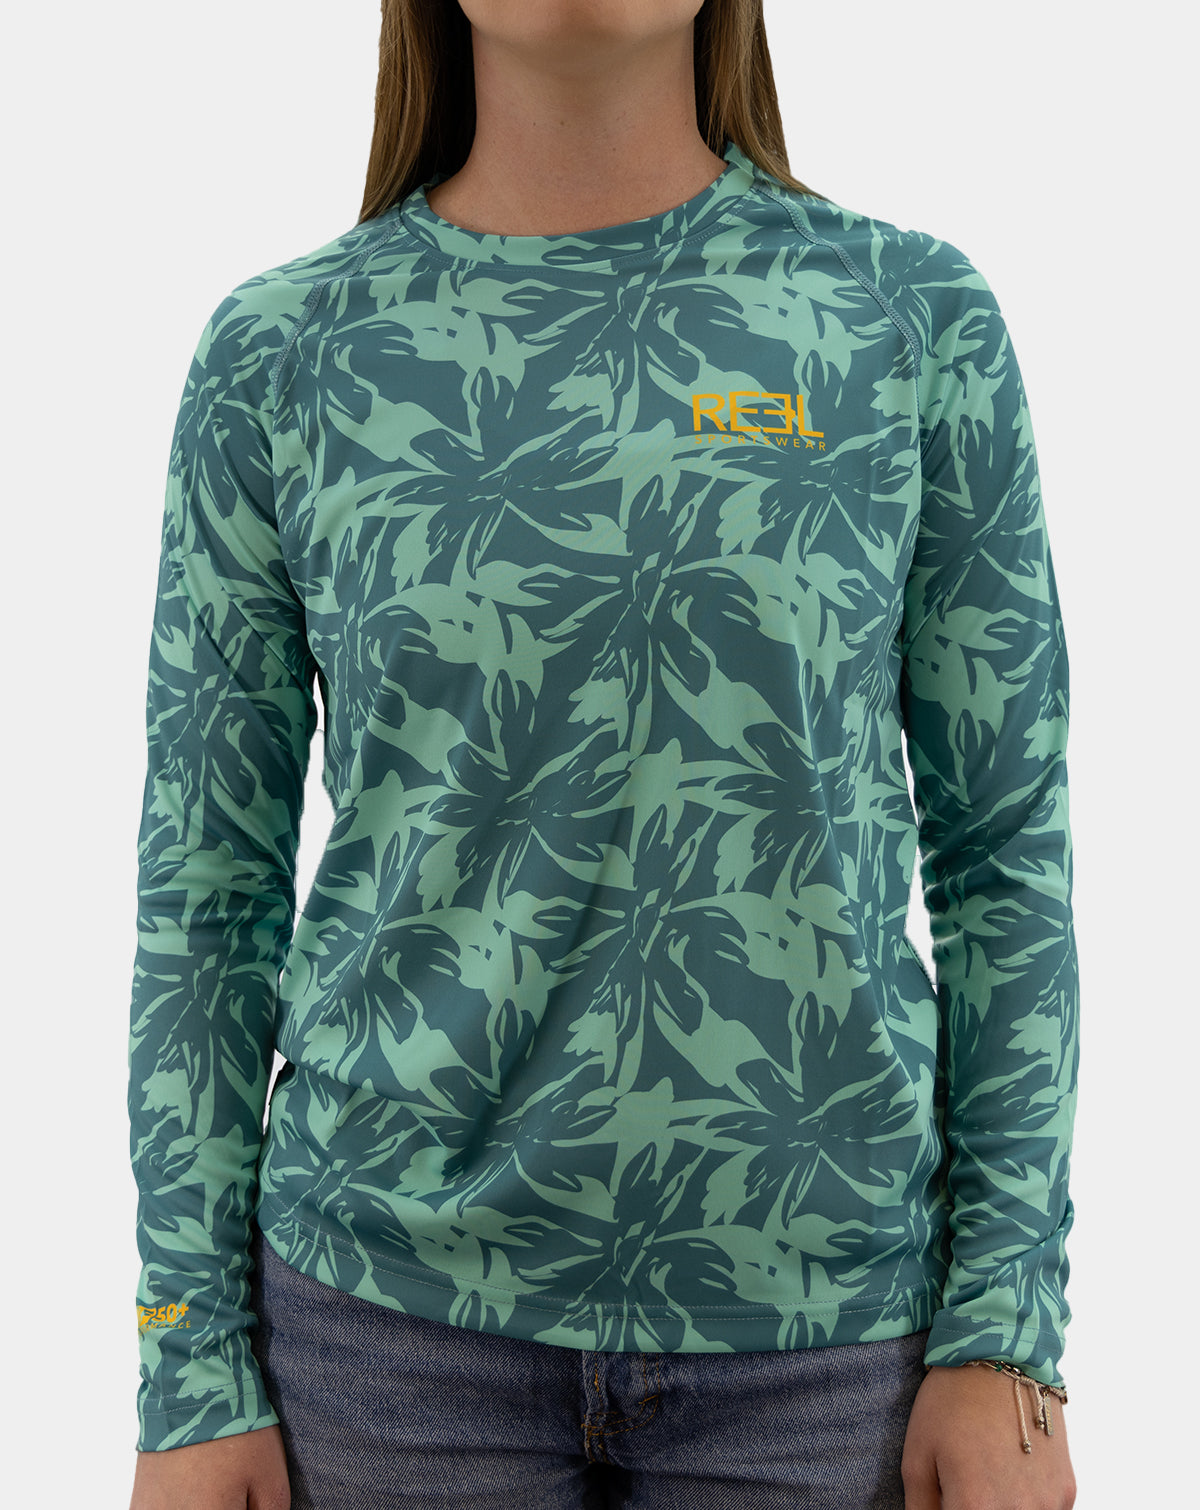 Kauai | Teal women&#39;s fishing long sleeve shirt